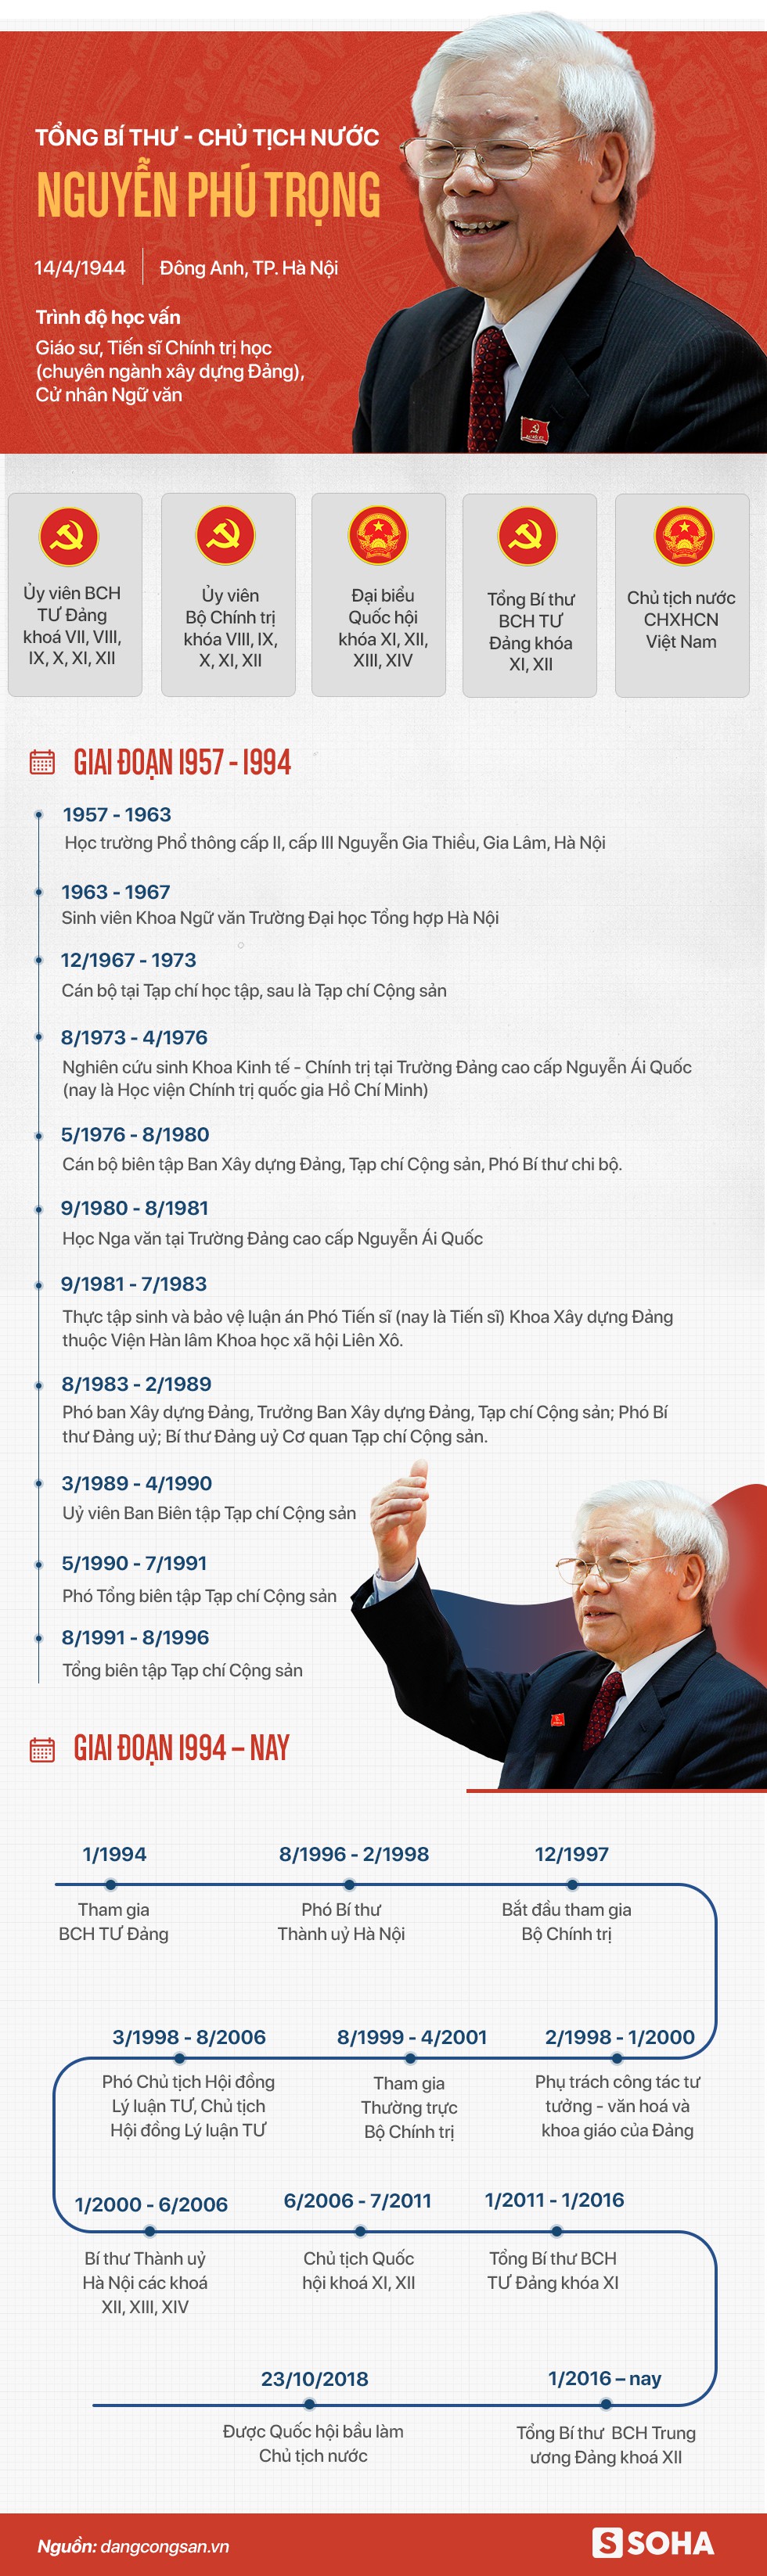 Tiểu sử Tổng bí thư, Chủ tịch nước Nguyễn Phú Trọng - Ảnh 1.